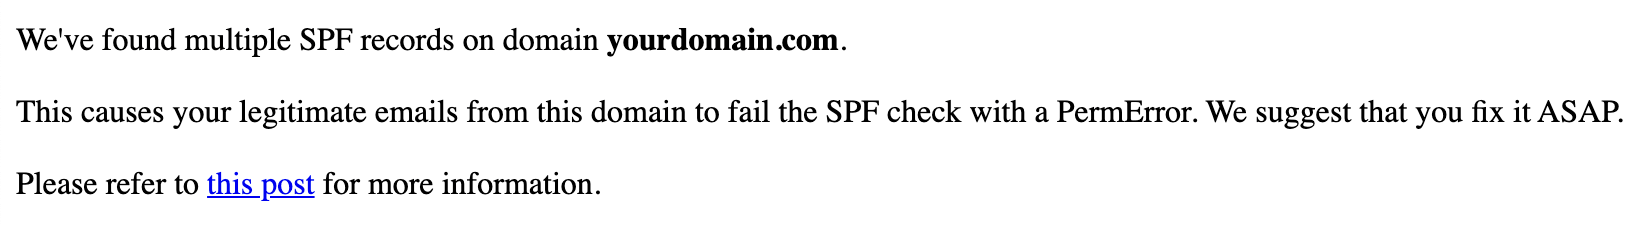 Ostrzeżenie o wielu rekordach SPF w domenie